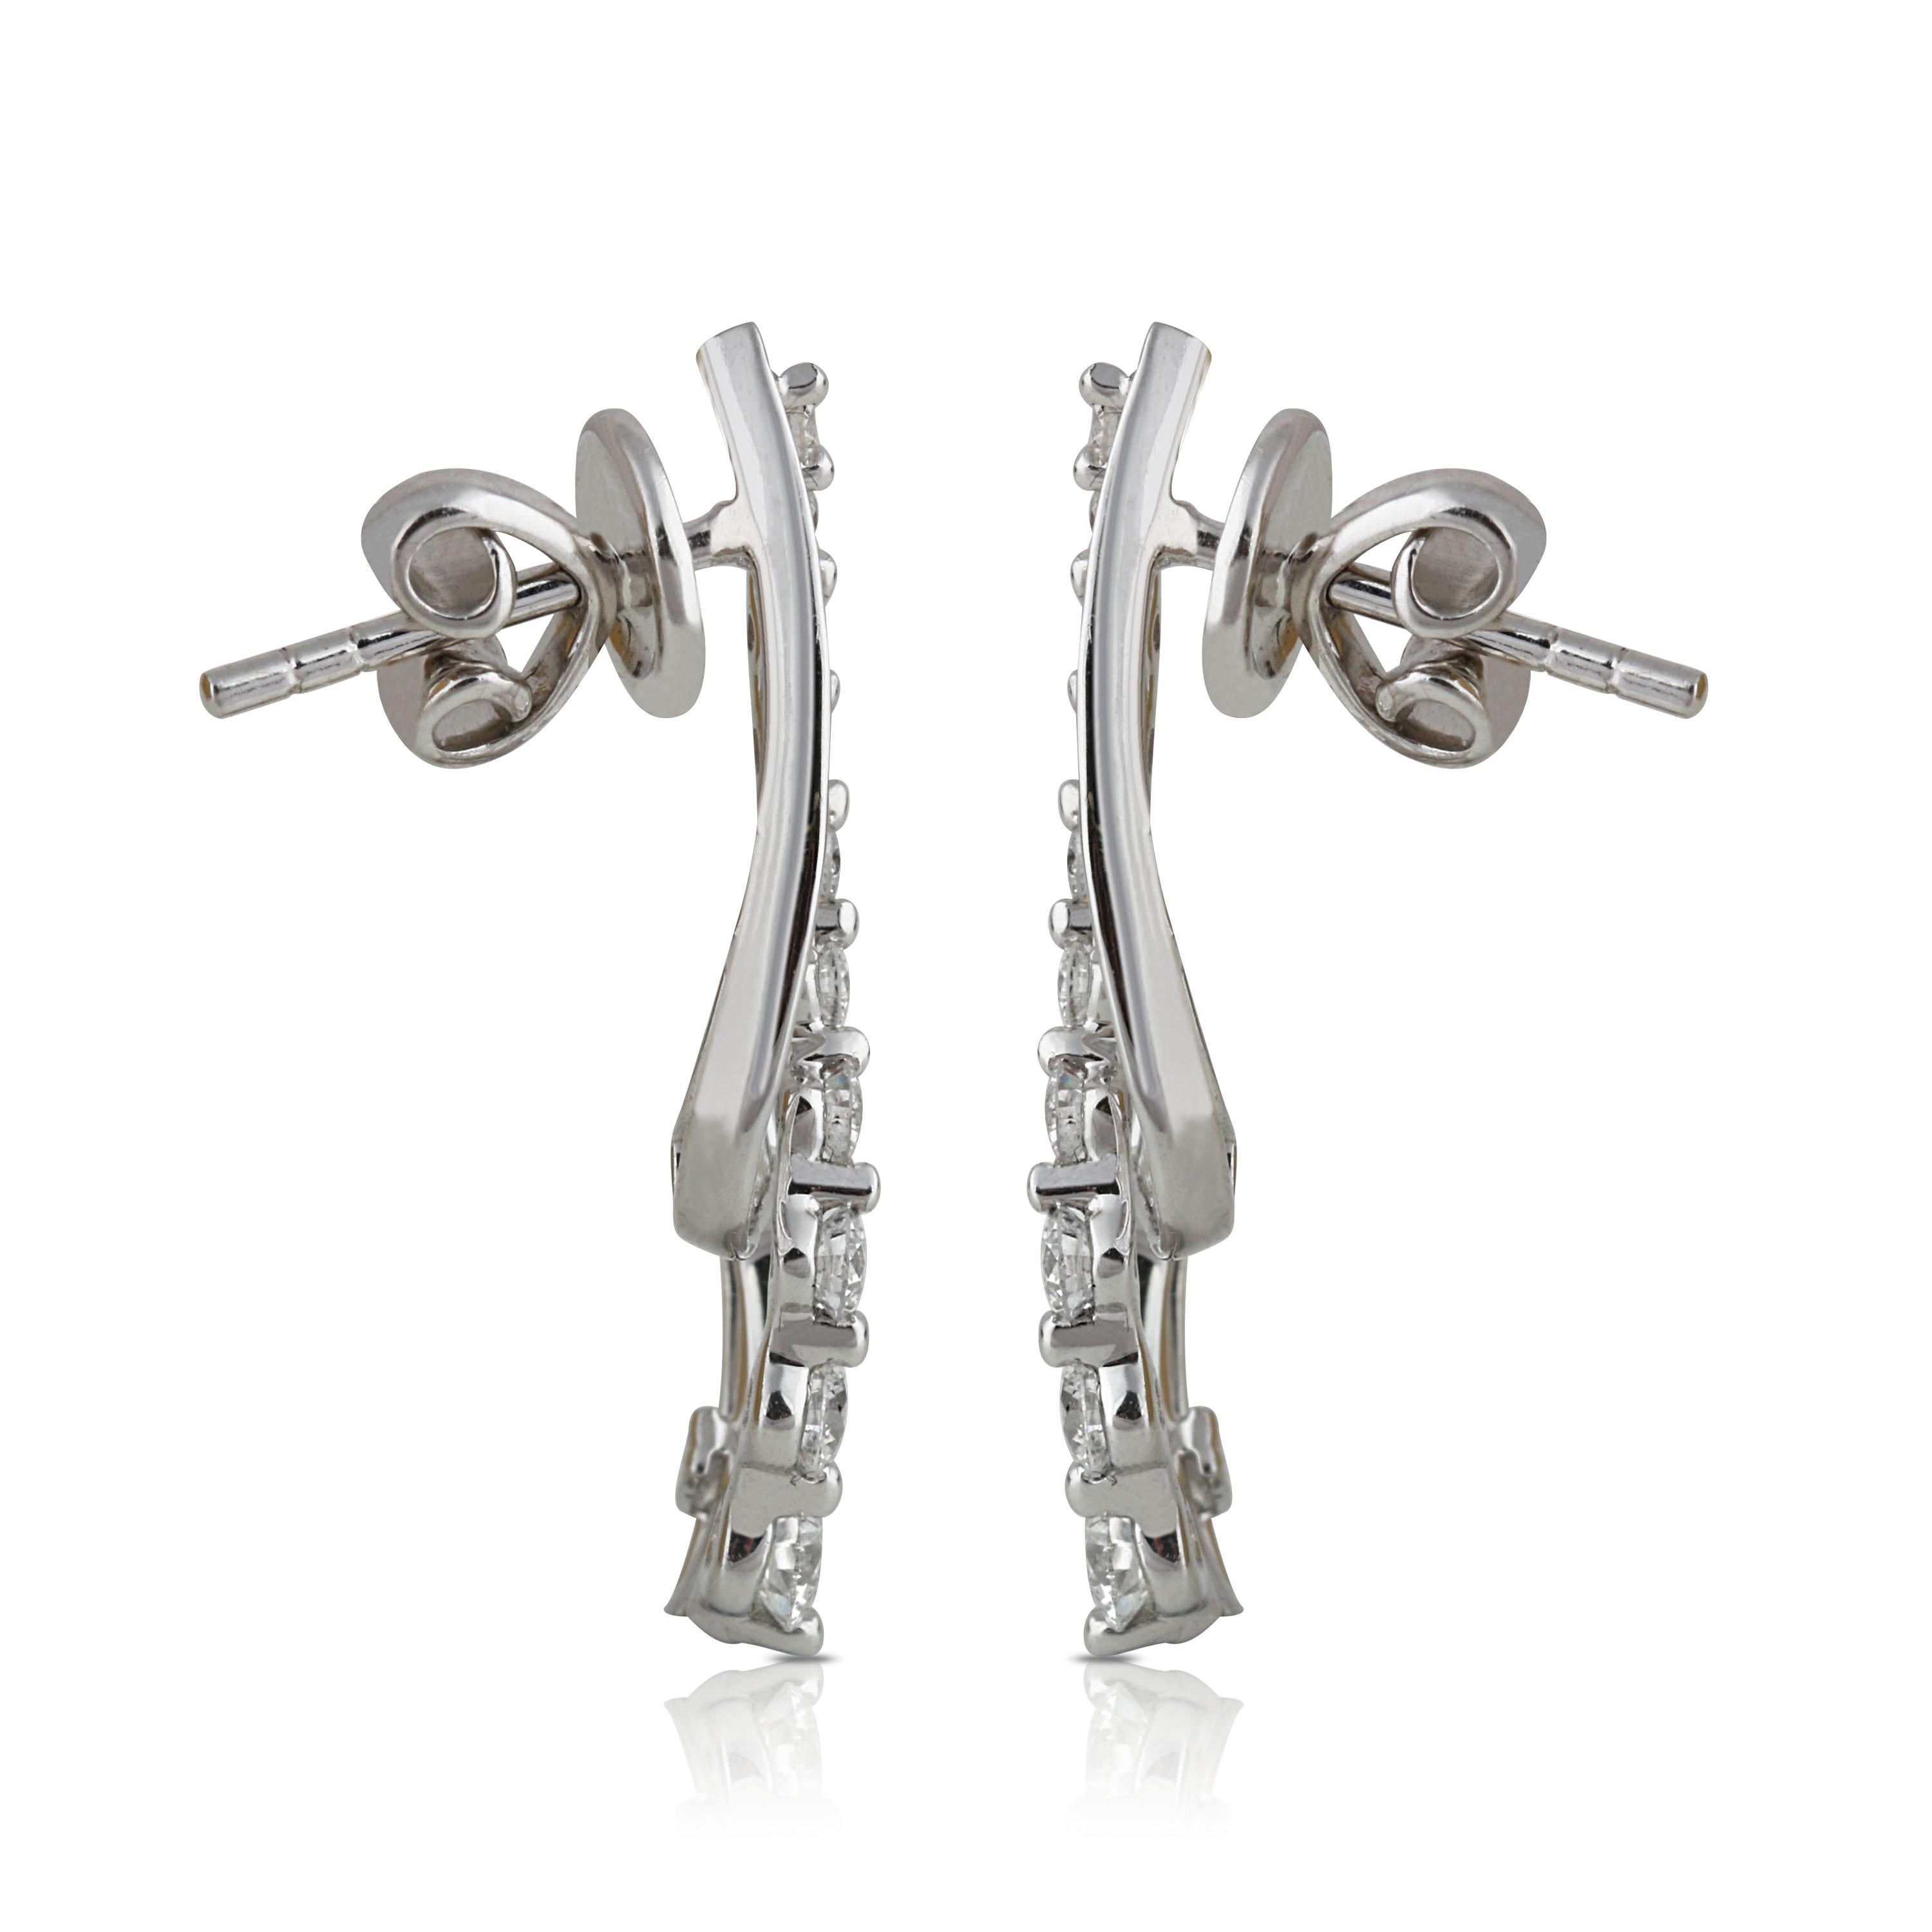 Modern Studio Rêves S-Shaped Diamond Earrings in 18 Karat White Gold